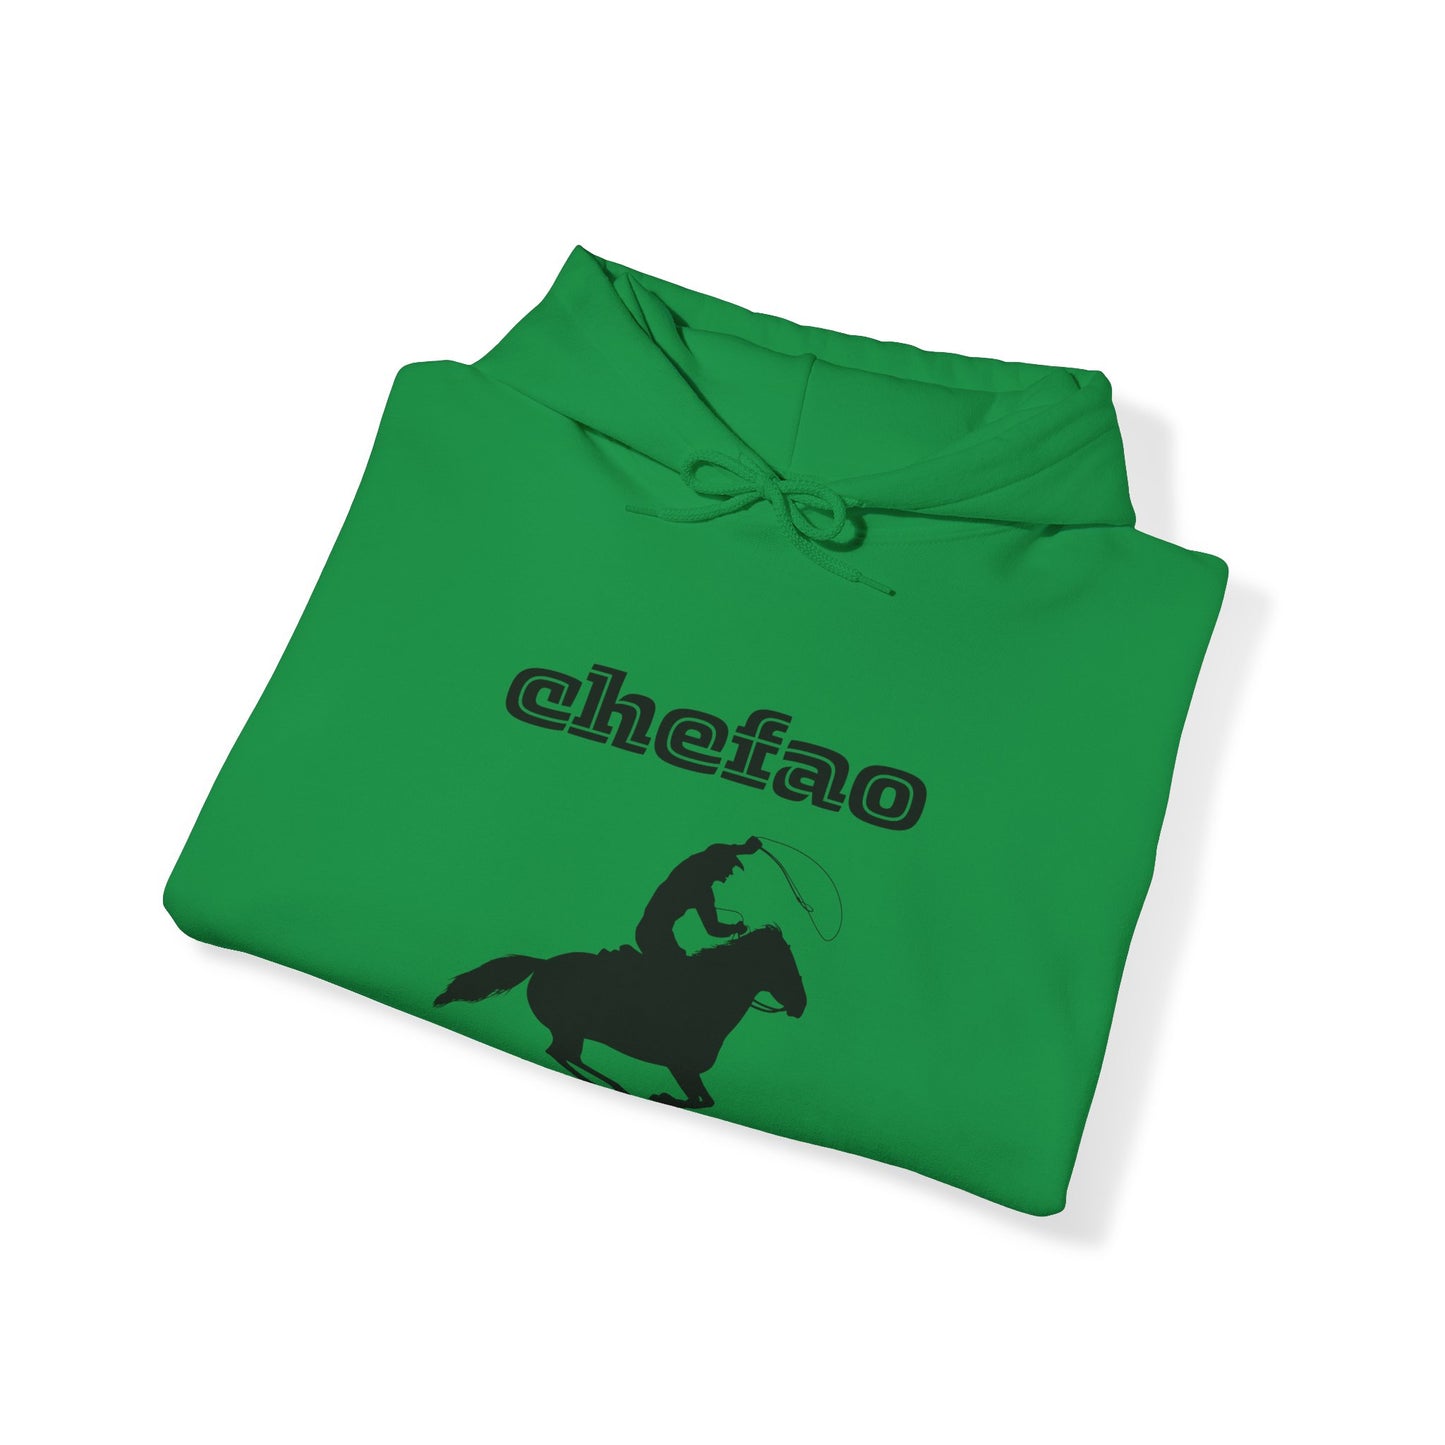 Chefao Cowboy III, Unisex Heavy Blend Hooded Sweatshirt